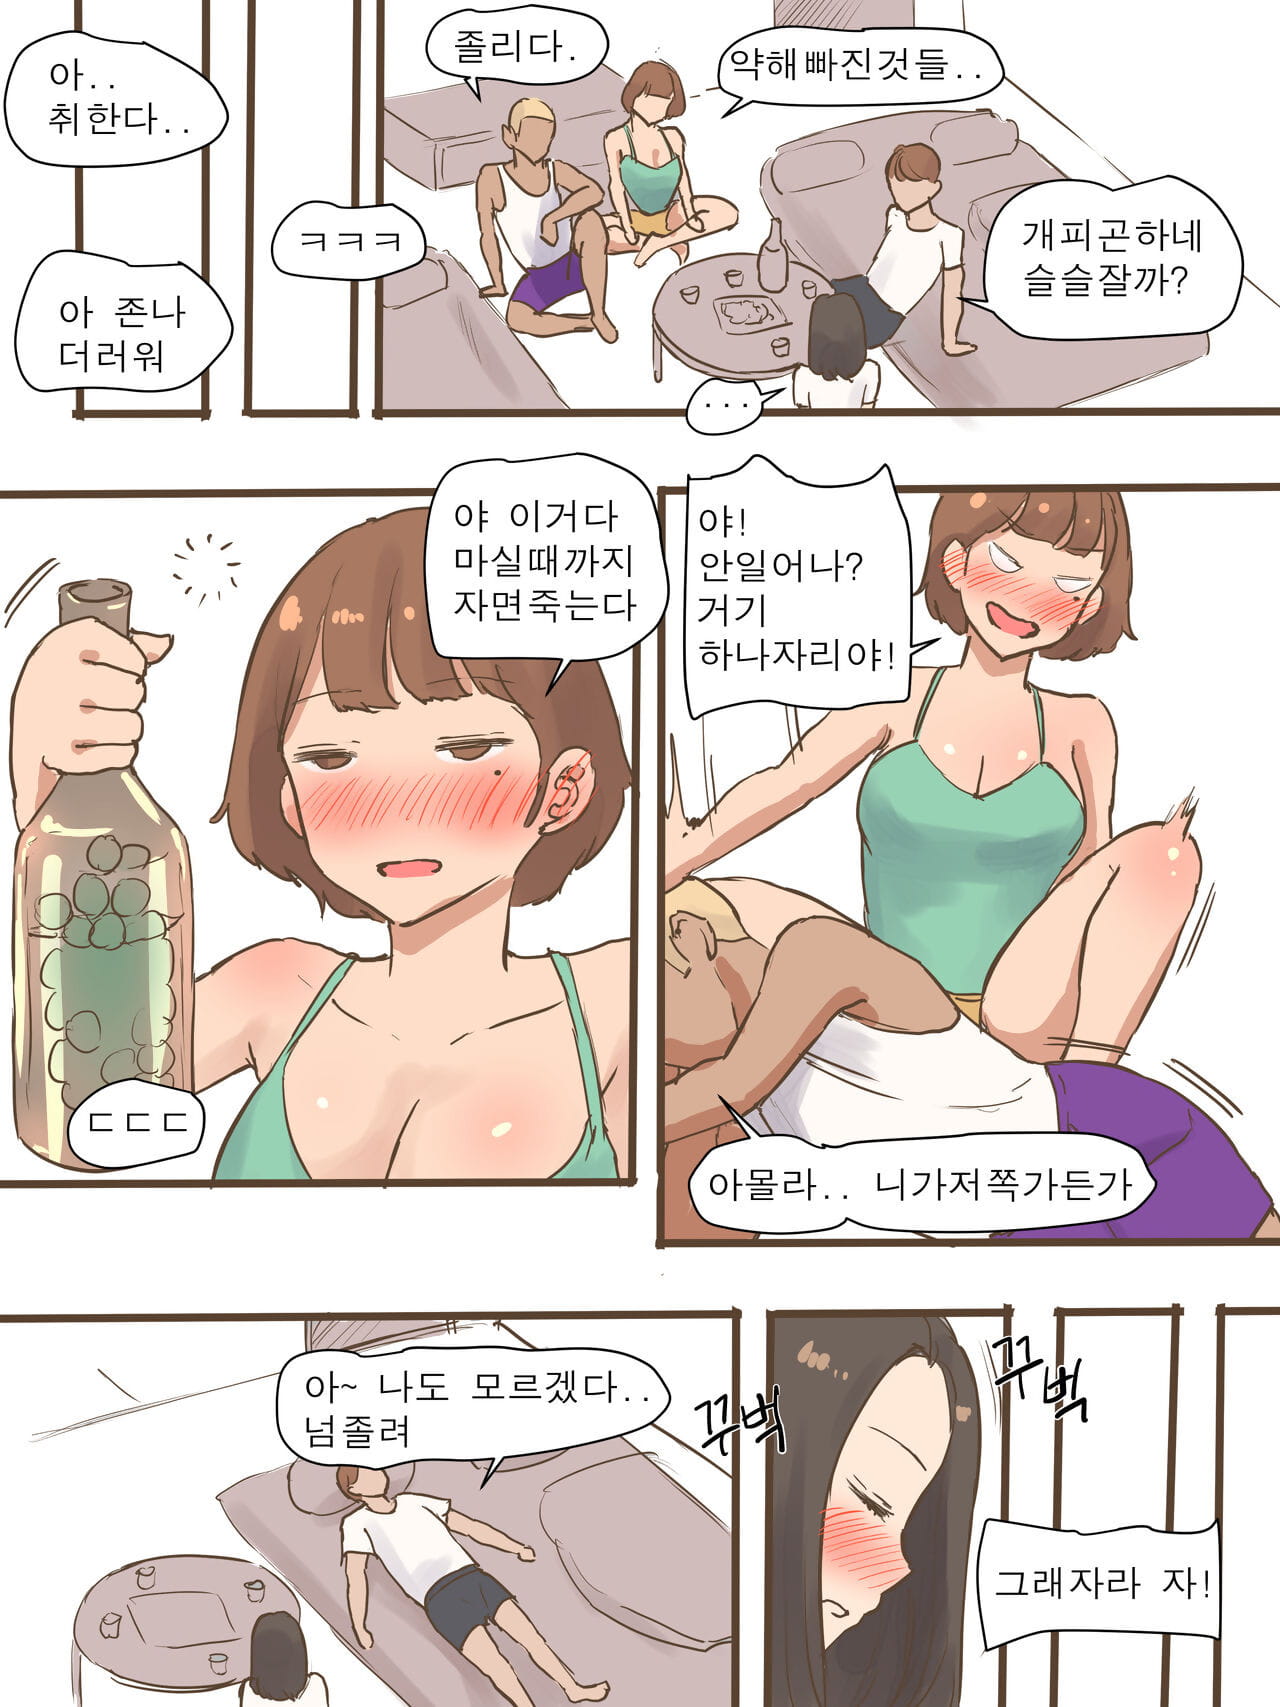 serbest özlem gel için bir anlayış bir ortaya Kore decensored süsleme 3